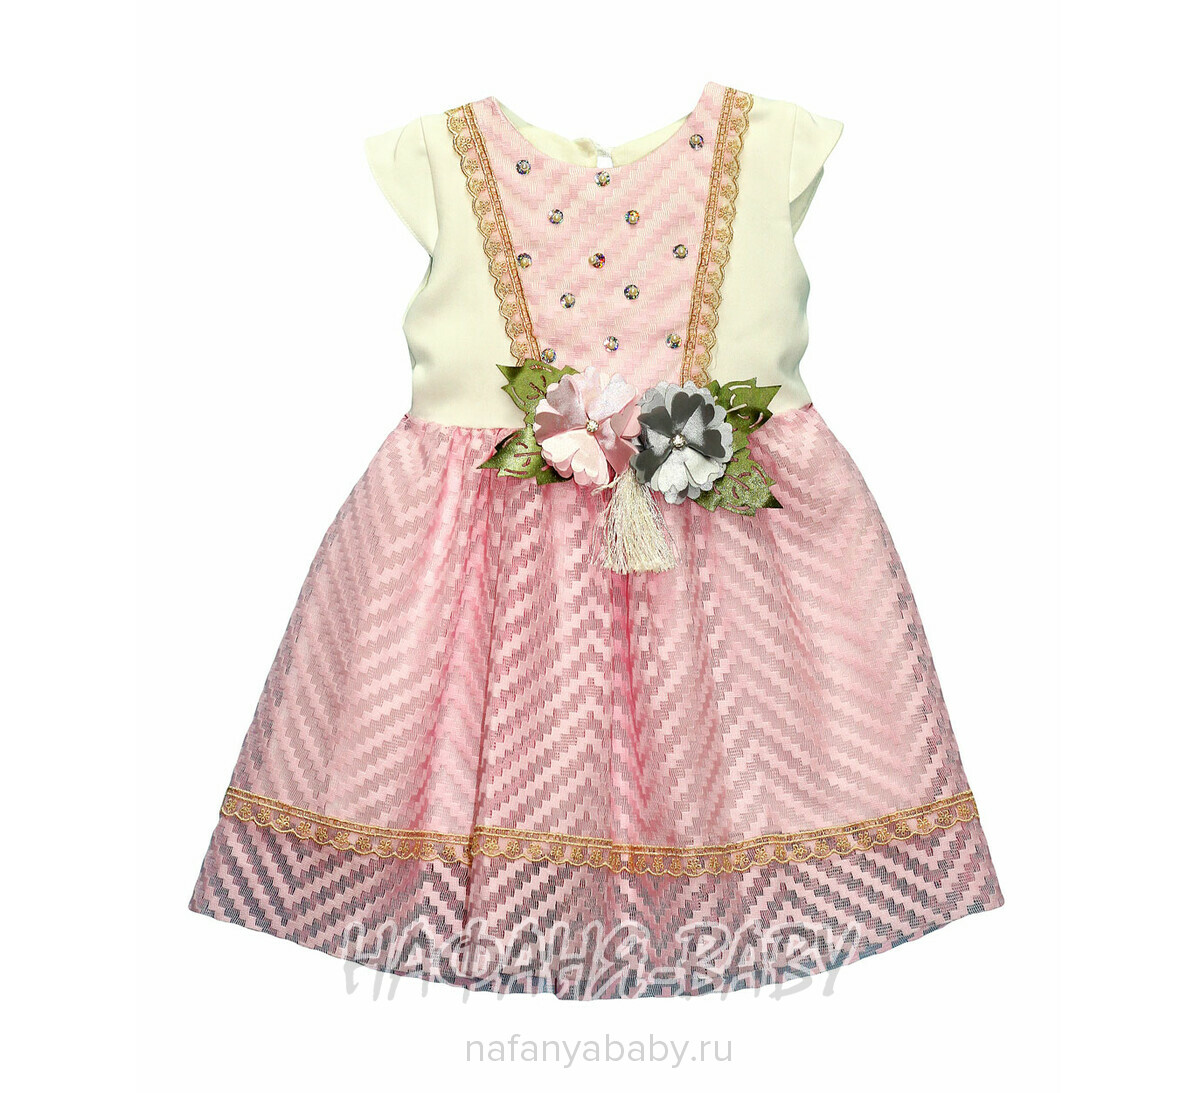 Детское нарядное платье CANKUS арт: 310, 0-12 мес, цвет розовый, оптом Турция